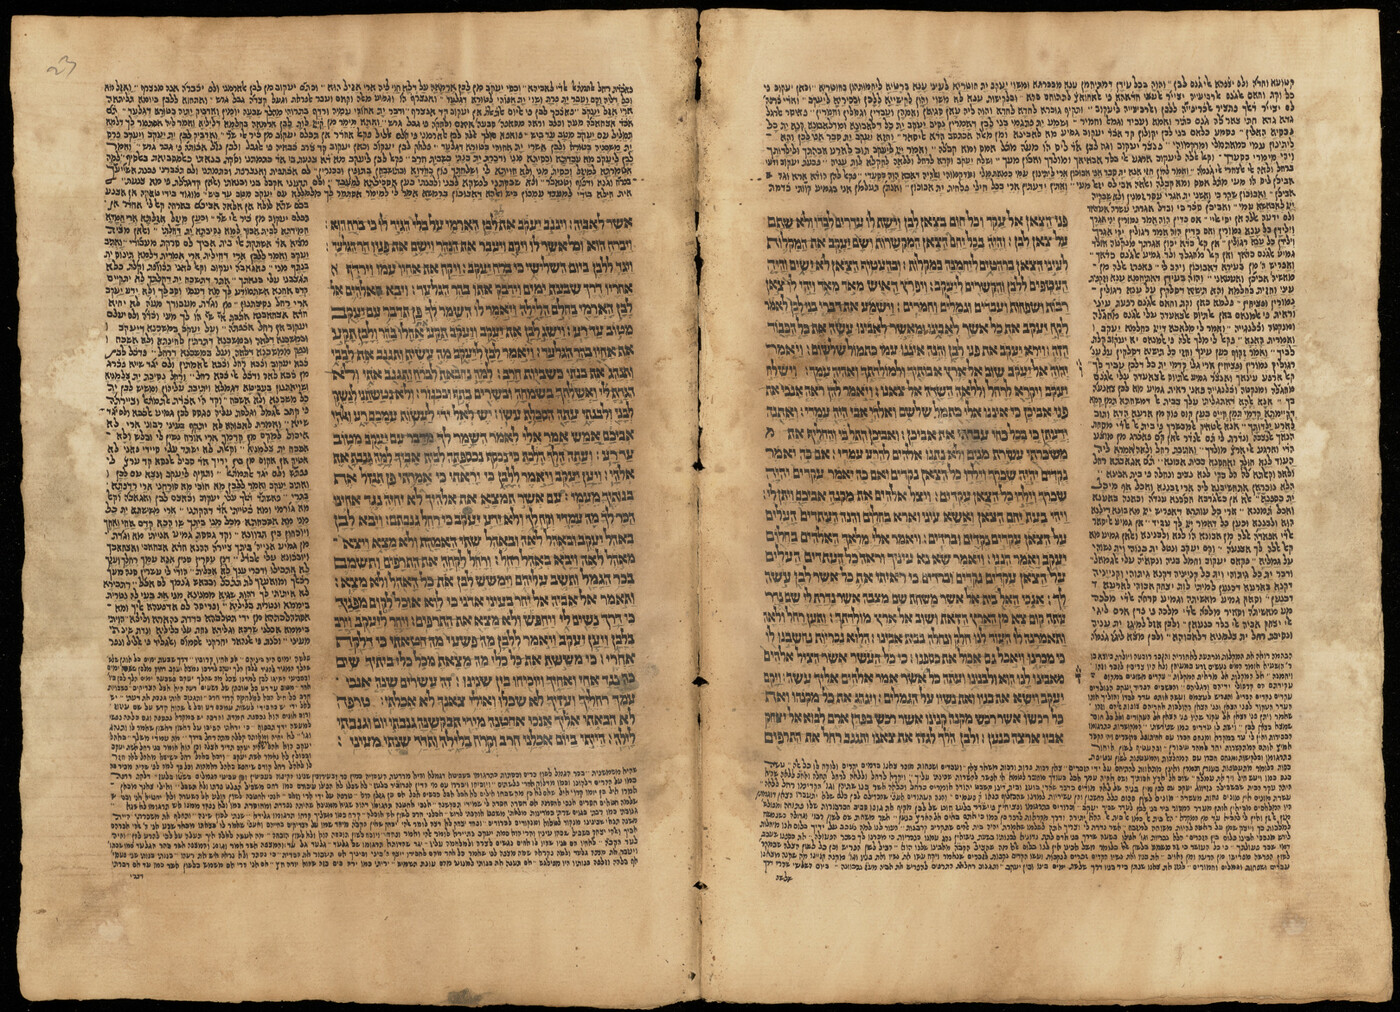 Folios 22b - 23a